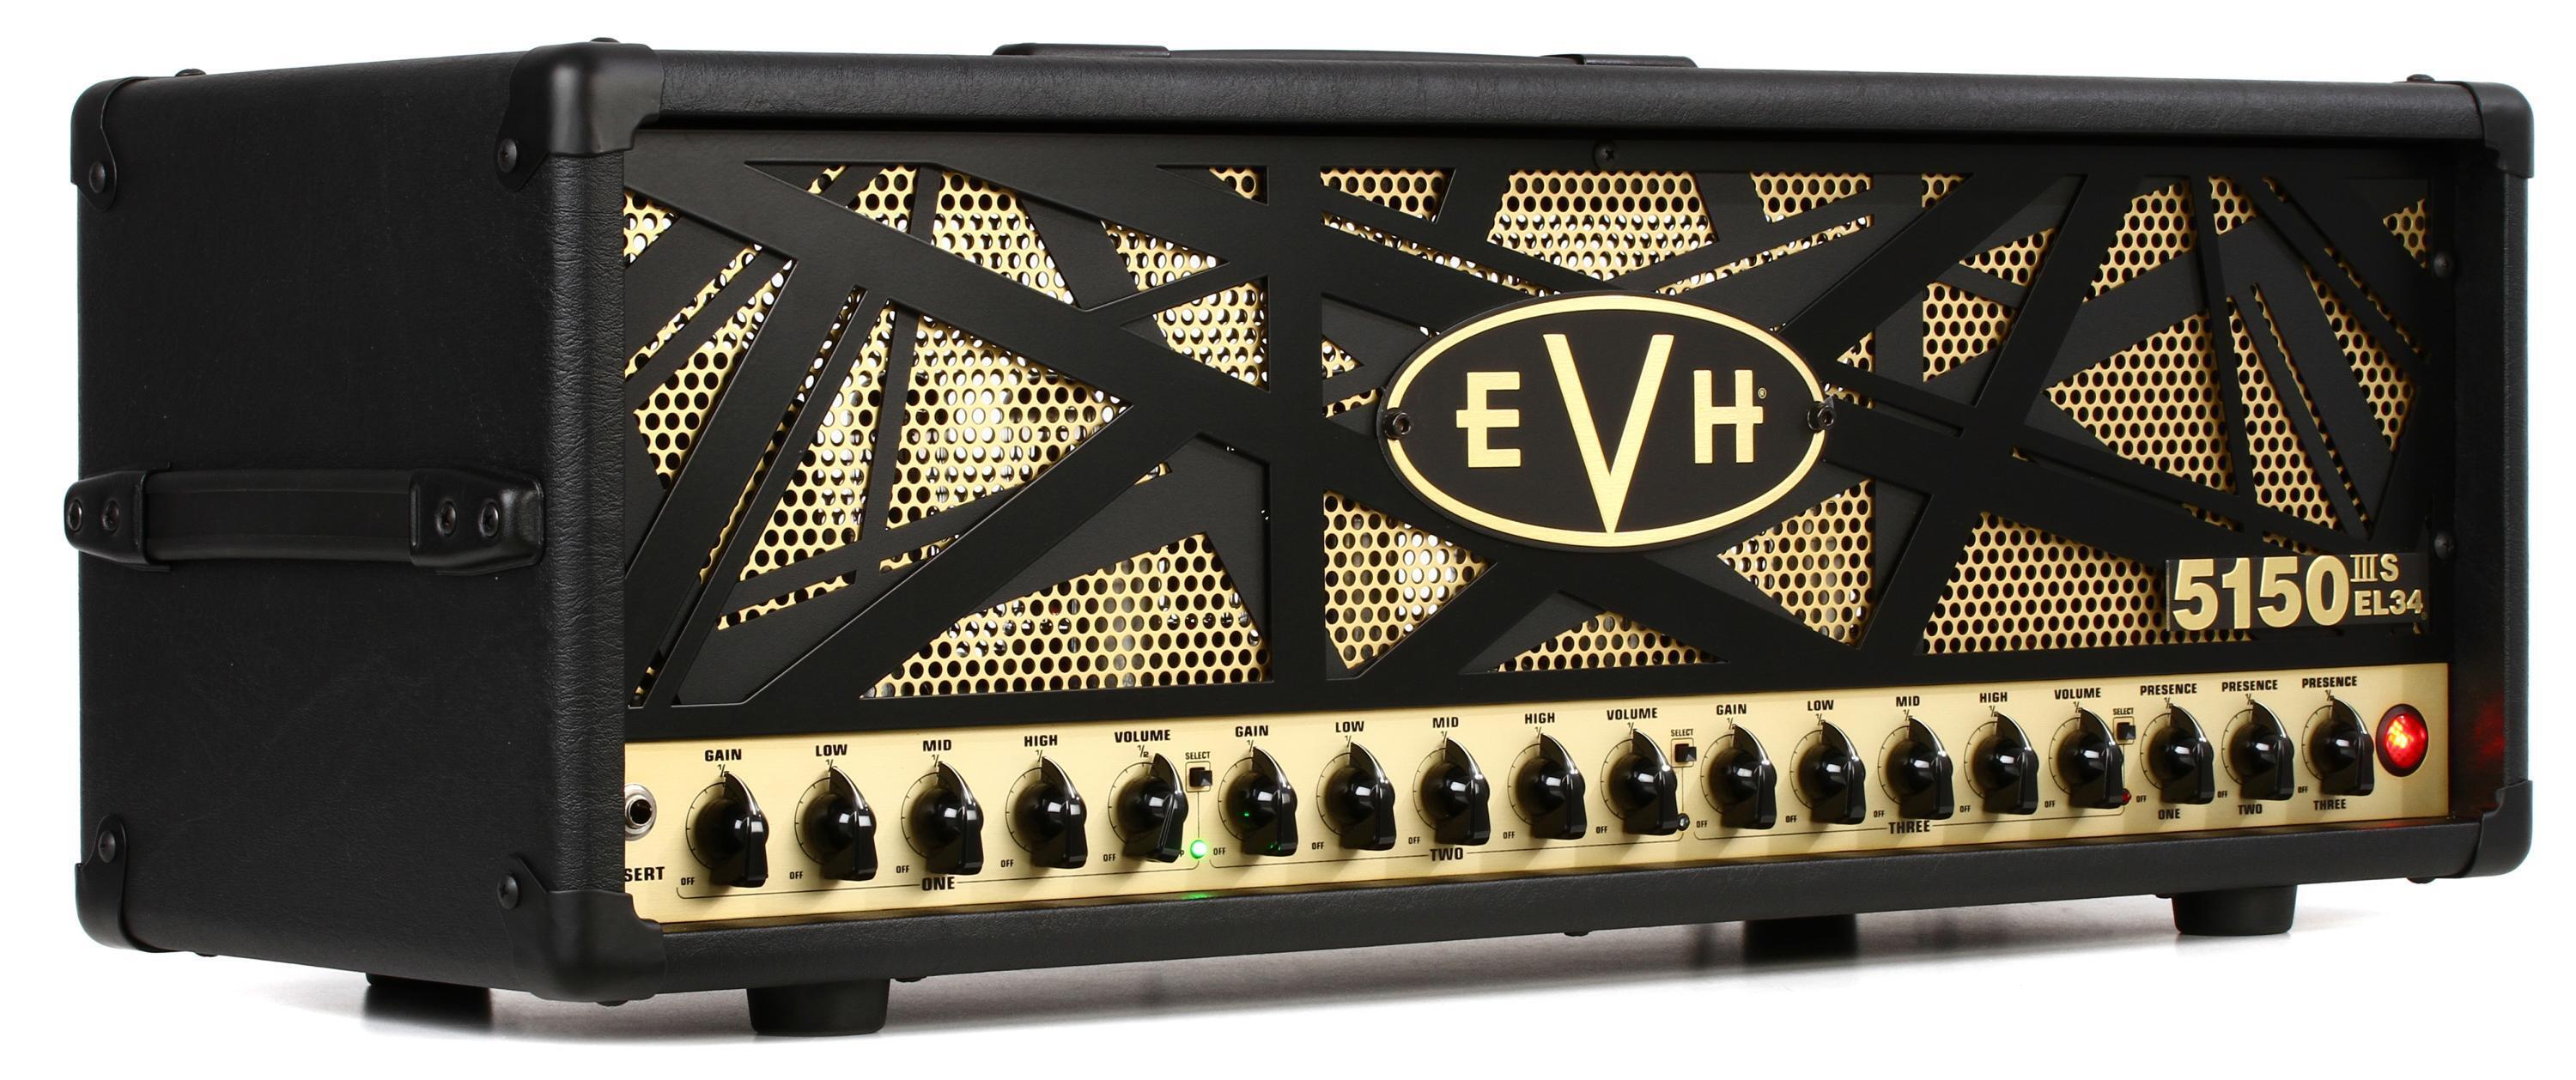 EVH 5150IIIS 100-watt EL34 Tube Head Reviews Sweetwater